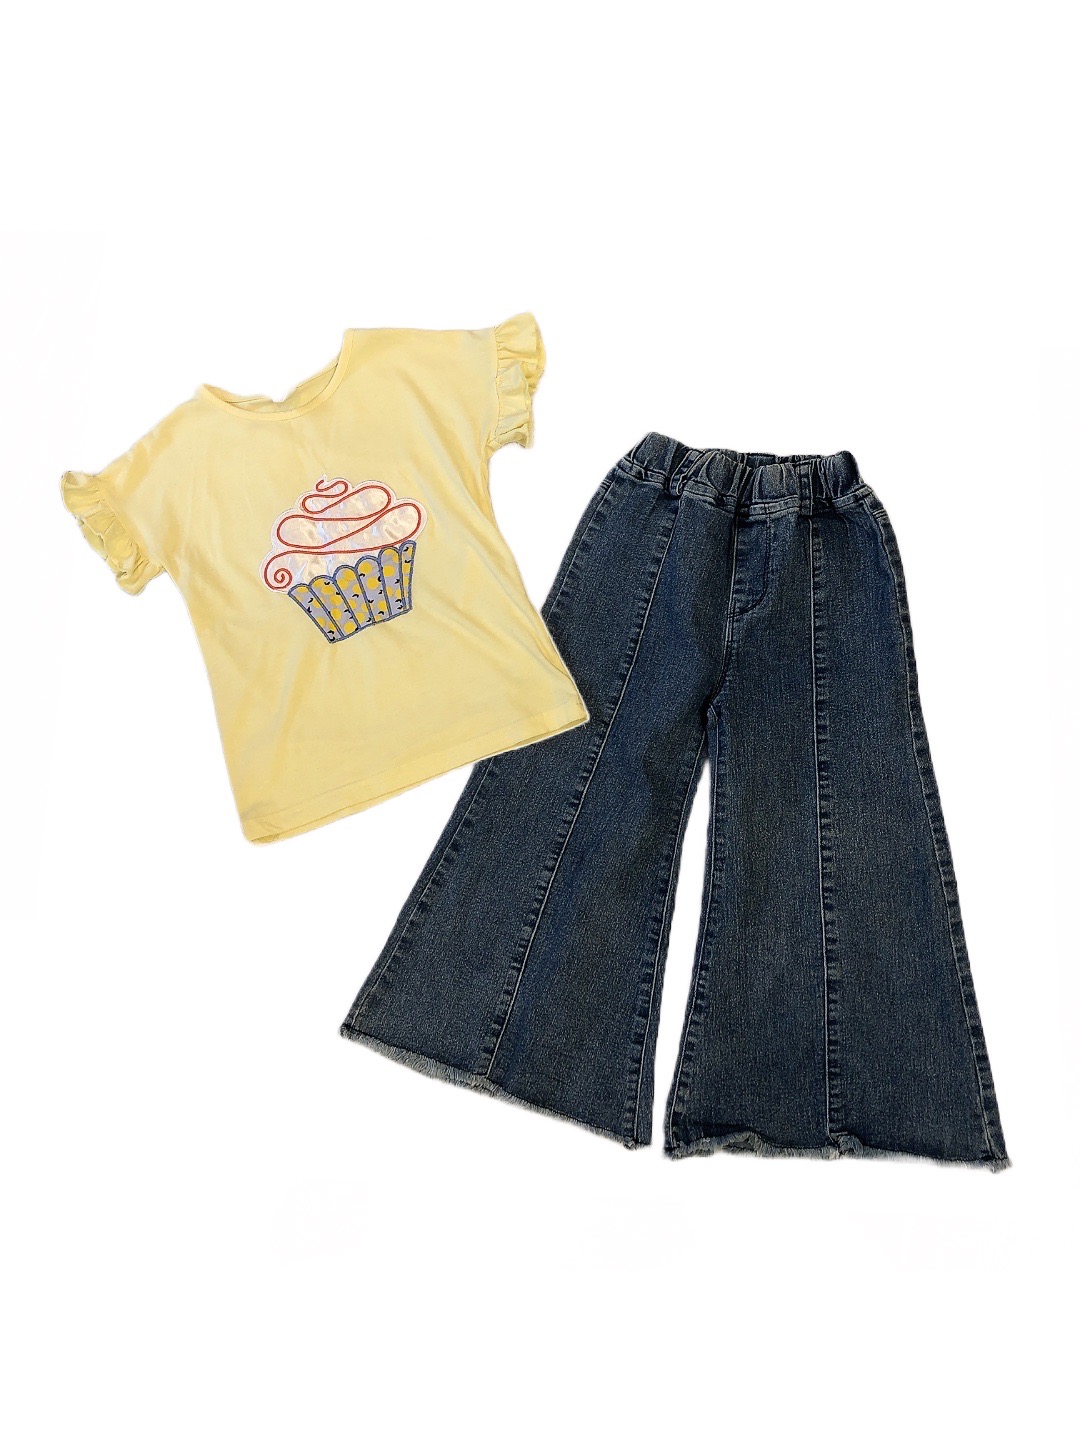 黃色冰淇淋造型短袖上衣&女童牛仔喇叭褲(11)
NT$169